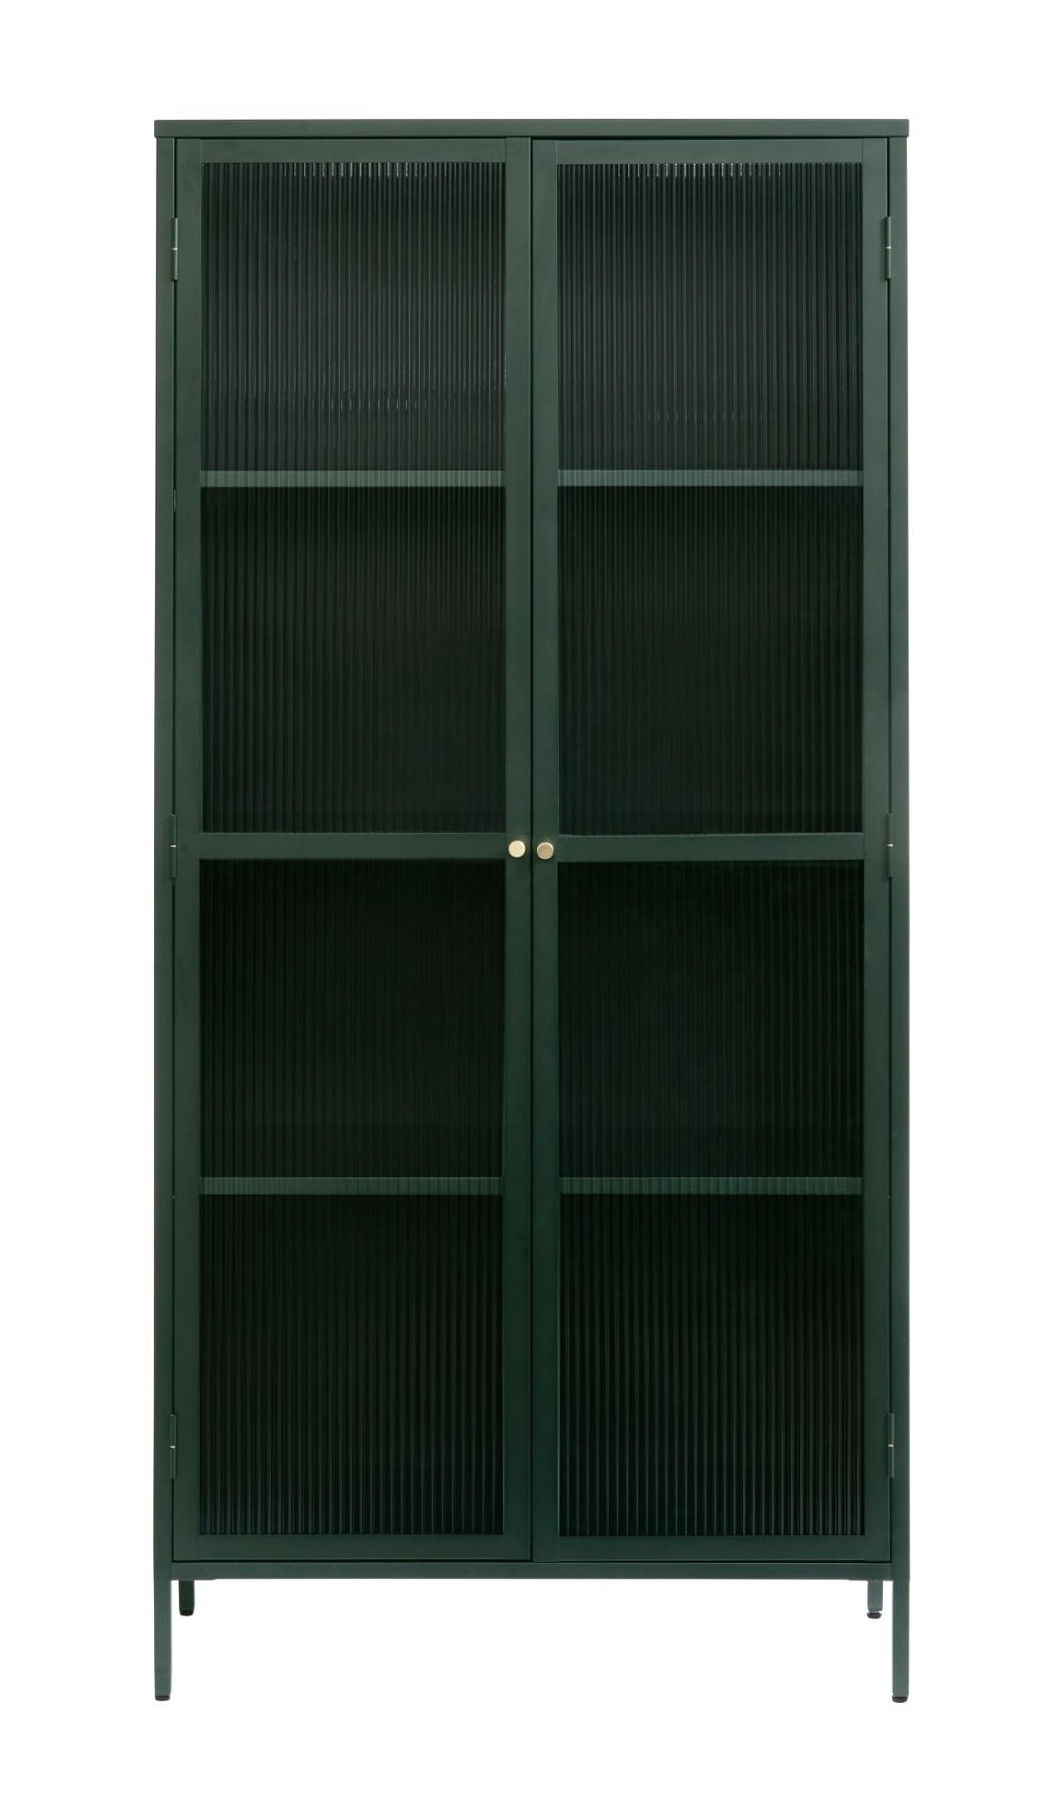 Witryna metalowa Avensunly 190 cm z przeszkleniem zielona